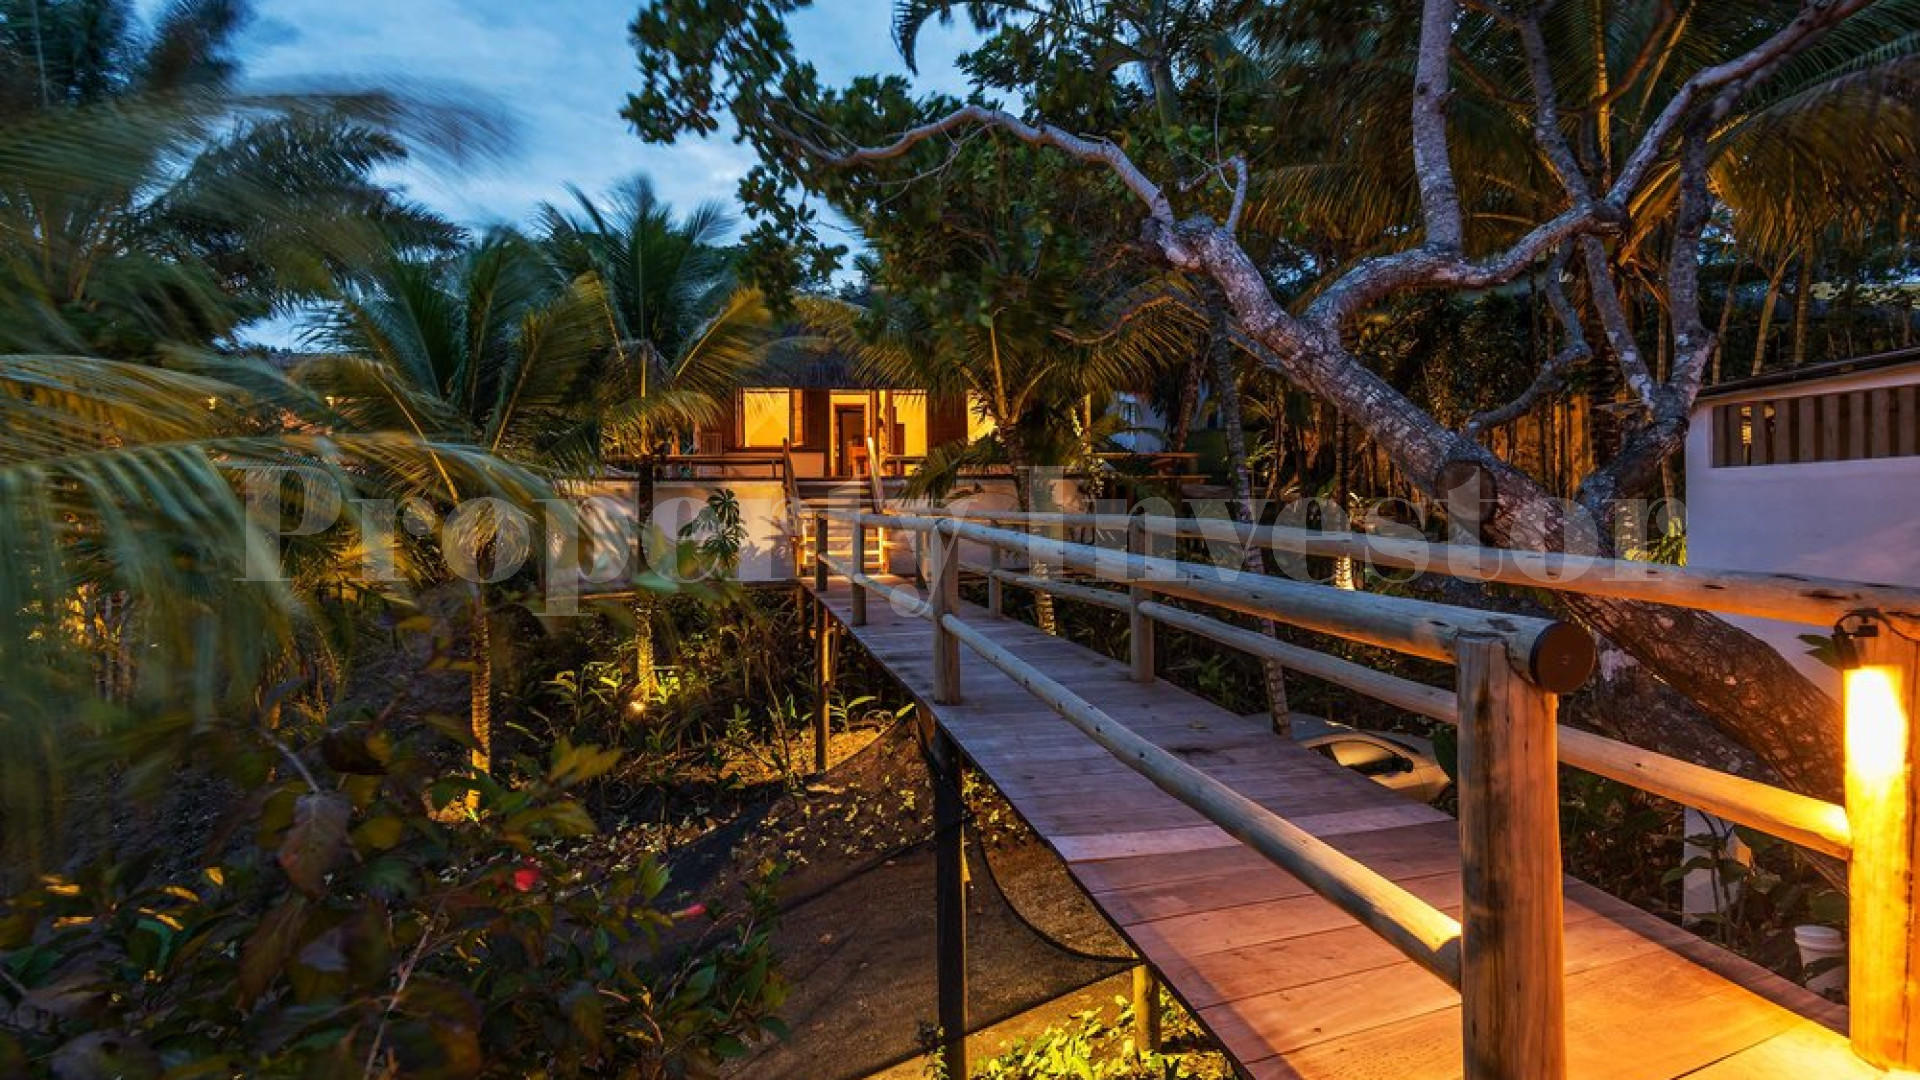 Продаётся превосходная вилла в джунглях у океана с 4 спальнями в Транкозо, Бразилия